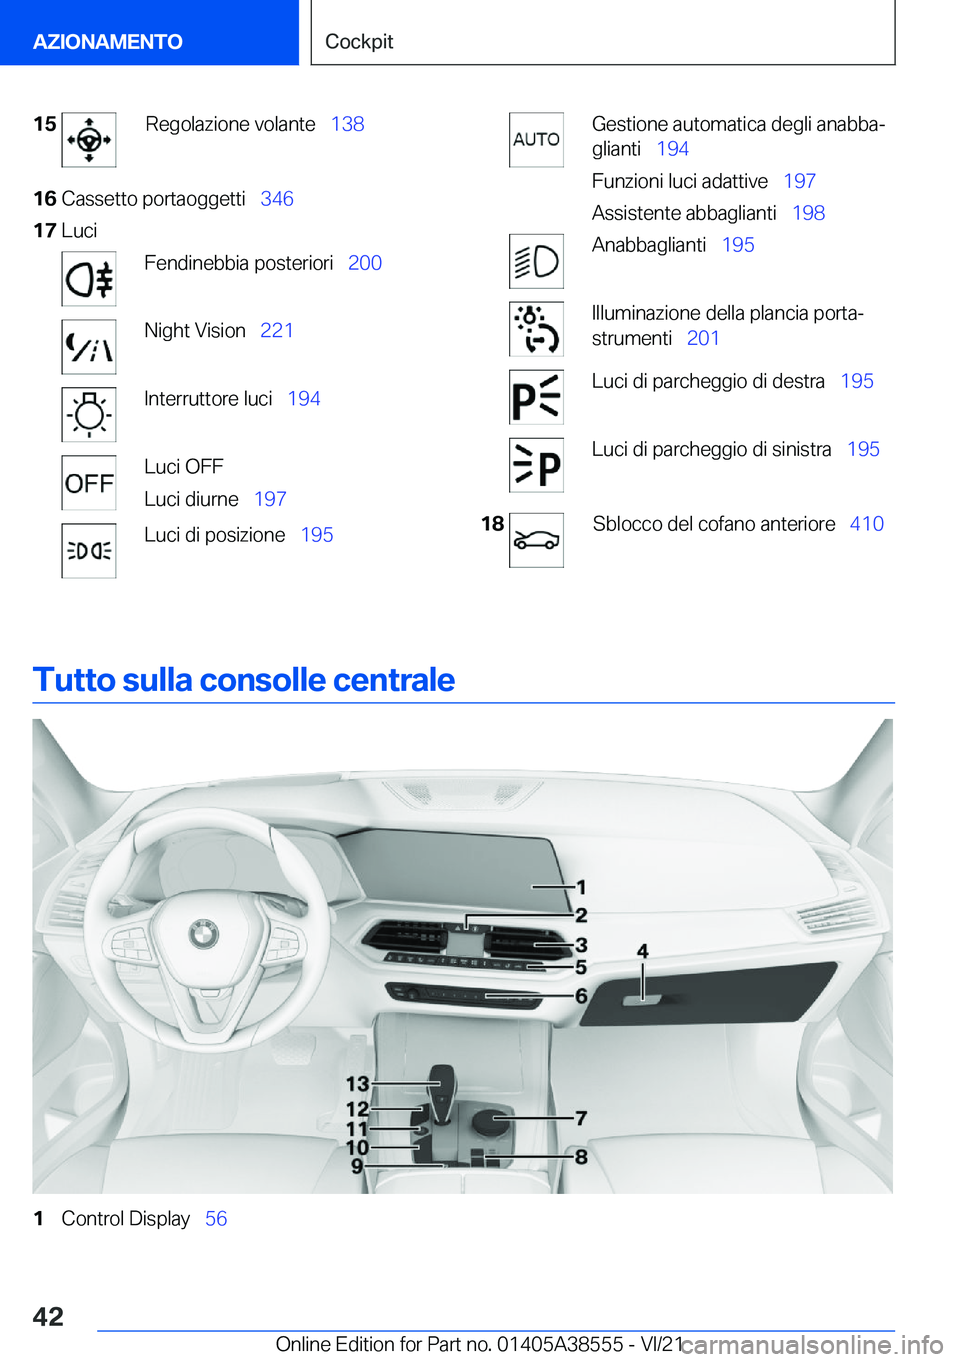 BMW X6 2022  Libretti Di Uso E manutenzione (in Italian) �1�5�R�e�g�o�l�a�z�i�o�n�e��v�o�l�a�n�t�e\_�1�3�8�1�6�C�a�s�s�e�t�t�o��p�o�r�t�a�o�g�g�e�t�t�i\_ �3�4�6�1�7�L�u�c�i�F�e�n�d�i�n�e�b�b�i�a��p�o�s�t�e�r�i�o�r�i\_ �2�0�0�N�i�g�h�t��V�i�s�i�o�n